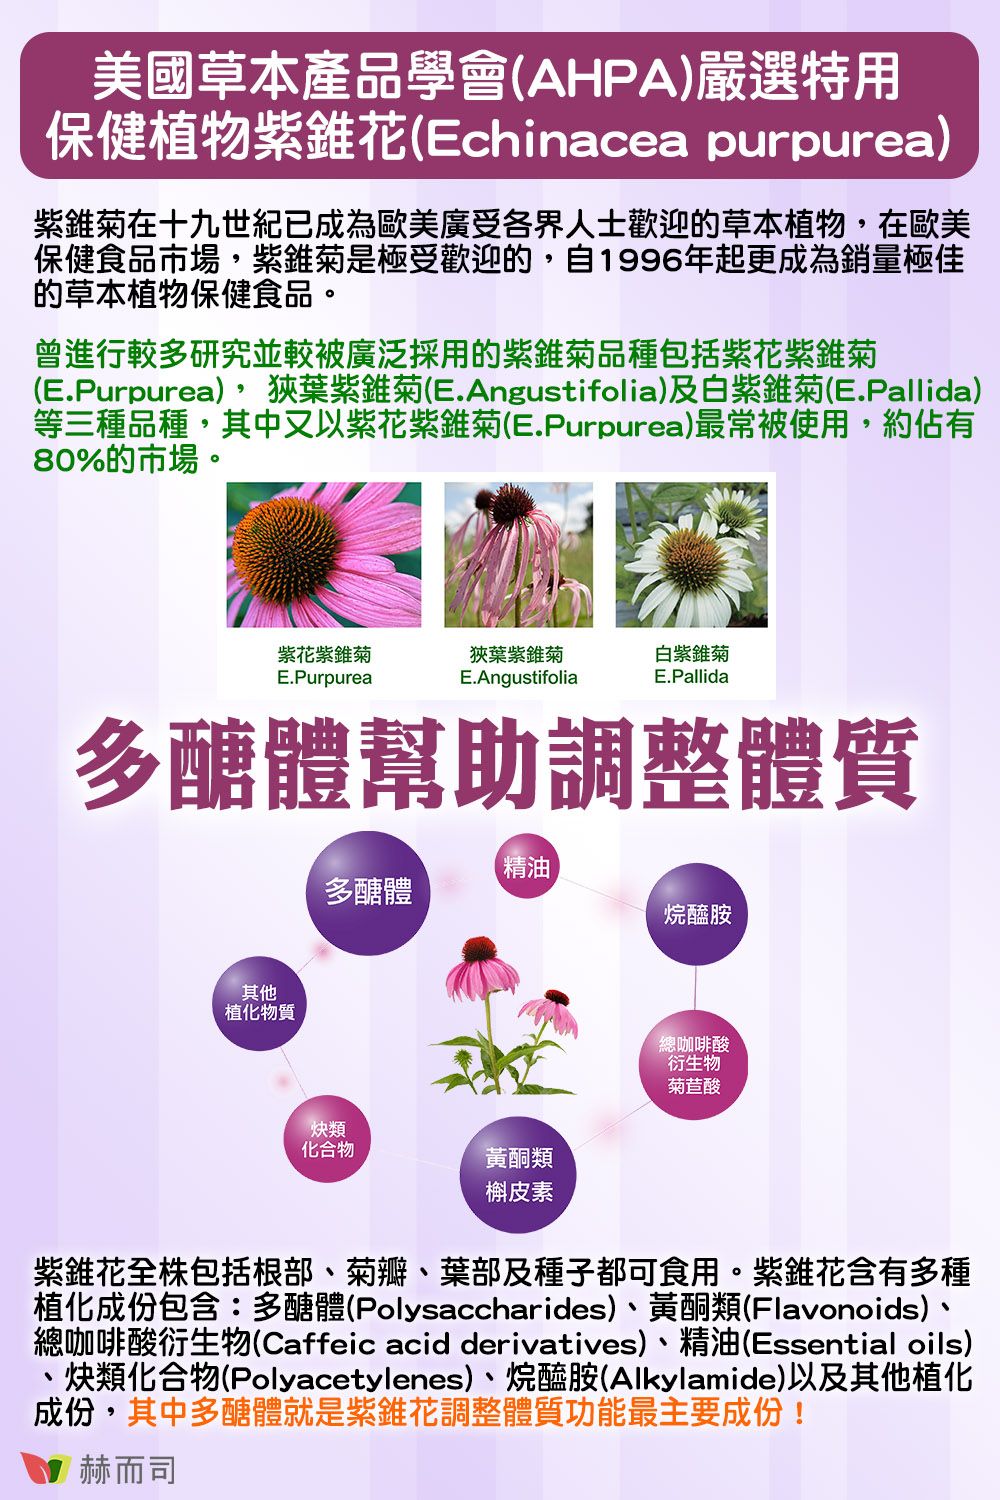 美國草本產品學會AHPA)嚴選特用保健植物紫錐花(Echinacea purpurea)紫錐在十九世紀已成為歐美廣受各界人士歡迎的草本植物,在歐美保健食品市場,紫錐菊是極受歡迎的,自1996年起更成為銷量極佳的草本植物保健食品。曾進行較多研究並較被廣泛採用的紫錐菊品種包括紫花紫錐菊(E.Purpurea),狹葉紫錐菊(E.Angustifolia)及白紫錐菊(E.Pallida)等三種品種,其中又以紫花紫錐菊(E.Purpurea)最常被使用,約佔有80%的市場。紫紫錐菊E.Purpurea狹葉紫錐菊E.Angustifolia白紫錐菊E.Pallida多醣體幫助調整體質其他植化物質精油多醣體烷醯胺類化合物黃酮類總咖啡酸衍生物菊苣酸槲皮素紫錐花包括根部菊瓣、葉部及種子都可食用。紫錐花含有多種植化成份包含:多醣體(Polysaccharides)、黃酮類(Flavonoids)、總咖啡酸衍生物(Caffeic acid derivatives)、精油(Essential oils)、類化合物(Polyacetylenes)、烷醯胺(Alkylamide)以及其他植化成份,其中多醣體就是紫錐花調整體質功能最主要成份!赫而司